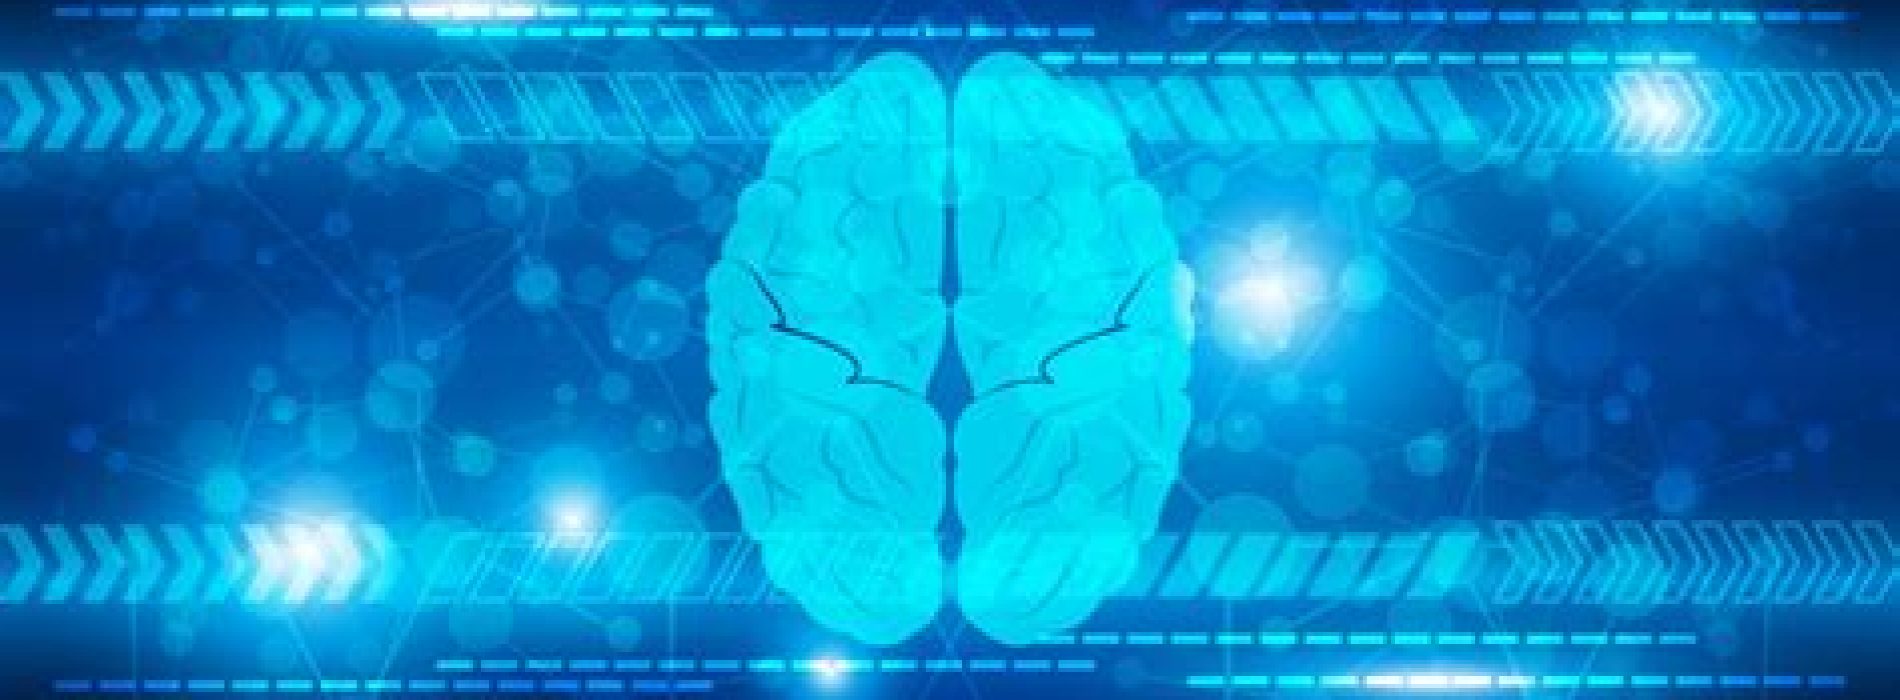 Magnetische stimulatie van de hersenen kan ouderdomsgerelateerde geheugenafname helpen voorkomen, suggereren onderzoekers